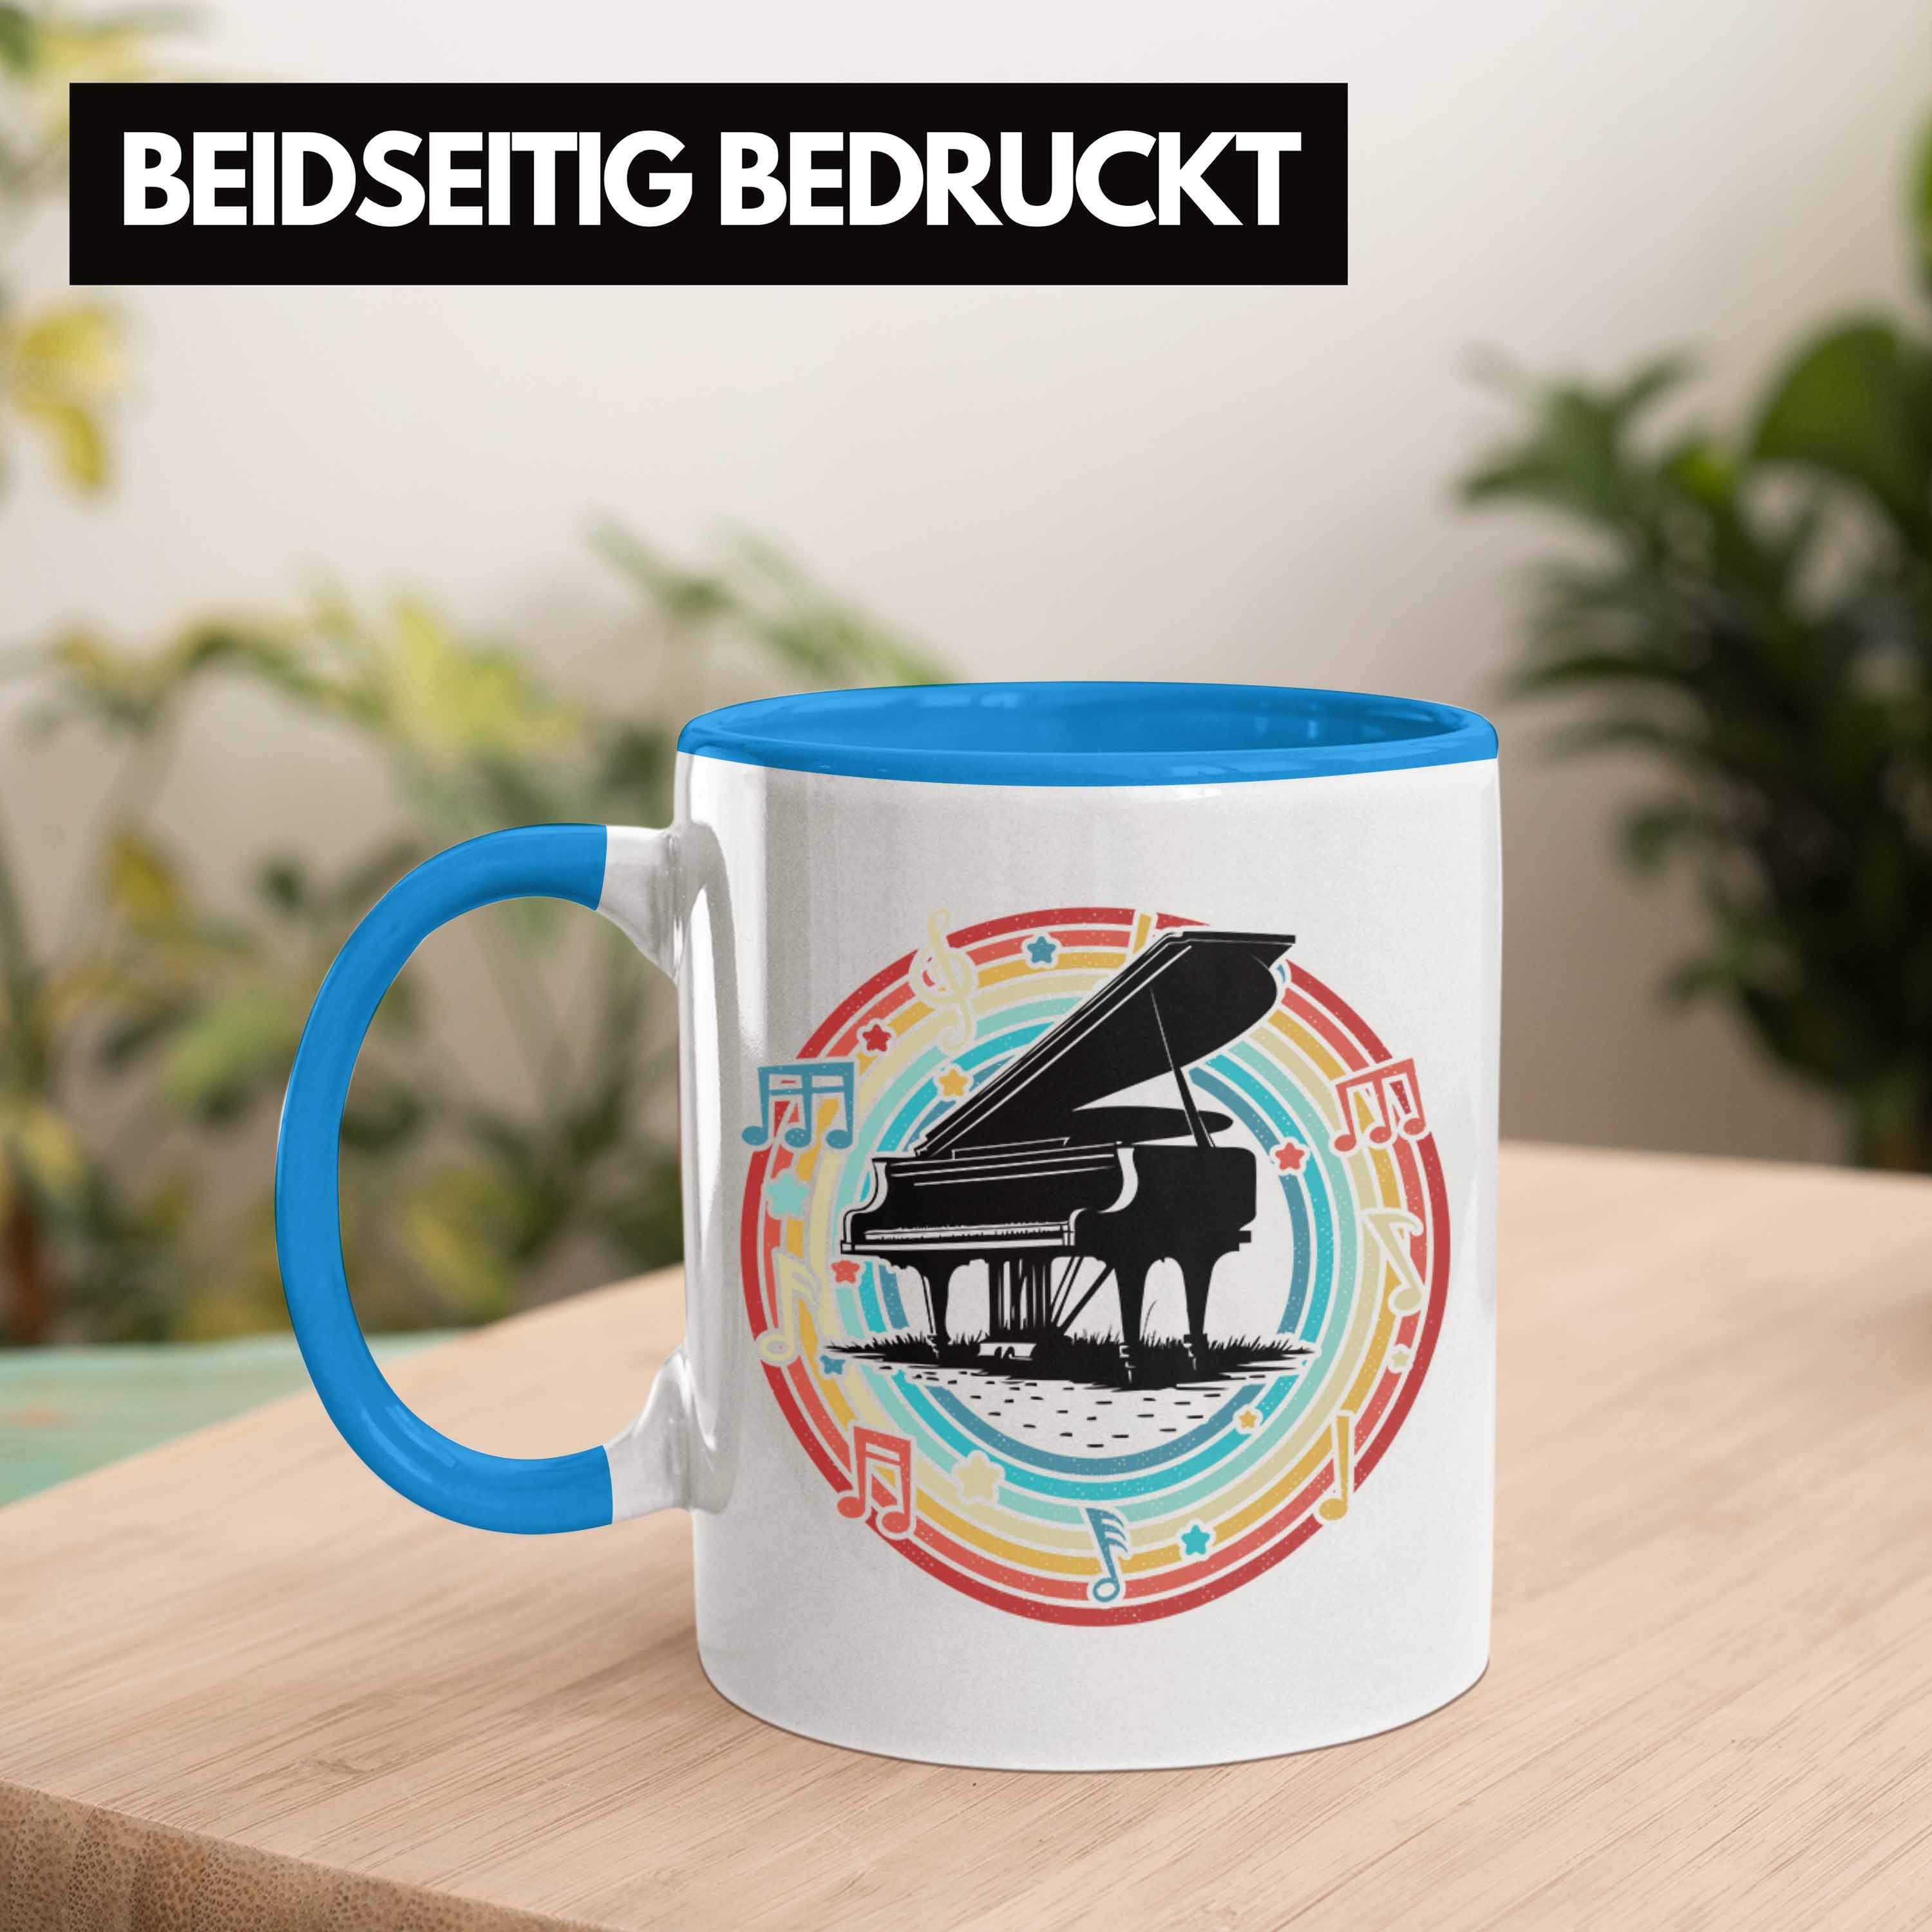 Trendation Tasse Kaffee-Becher Geschenkidee Geschenk Klavier Flügel Blau Piano-Spieler Tasse